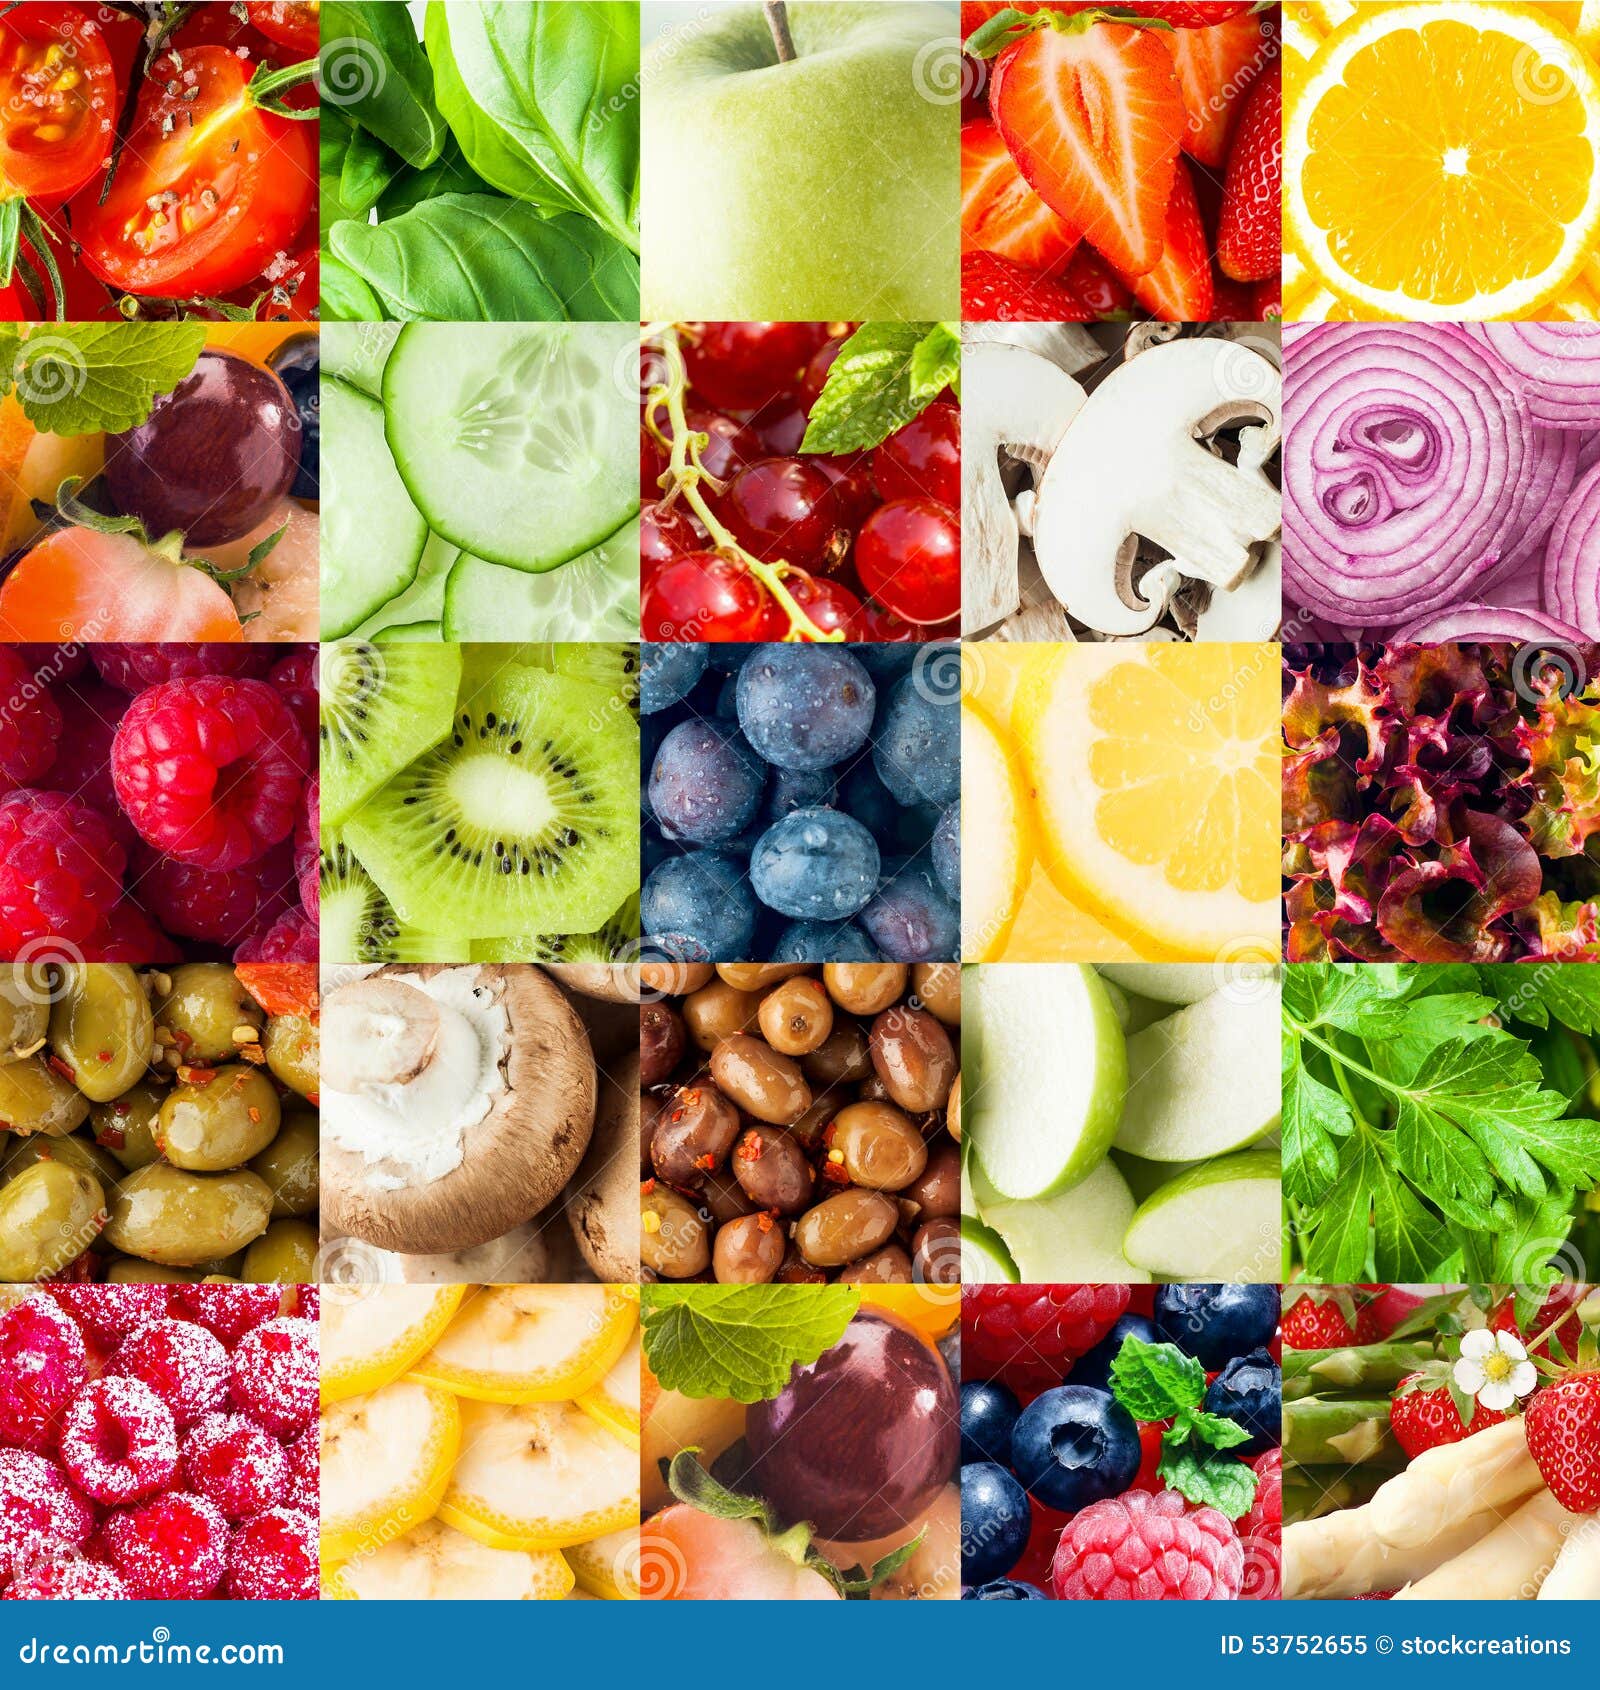 许多不同的水果和蔬菜拼贴画 库存图片. 图片 包括有 果子, 绿色, 问题的, 新鲜, 葡萄, 节食, 石灰 - 28964301